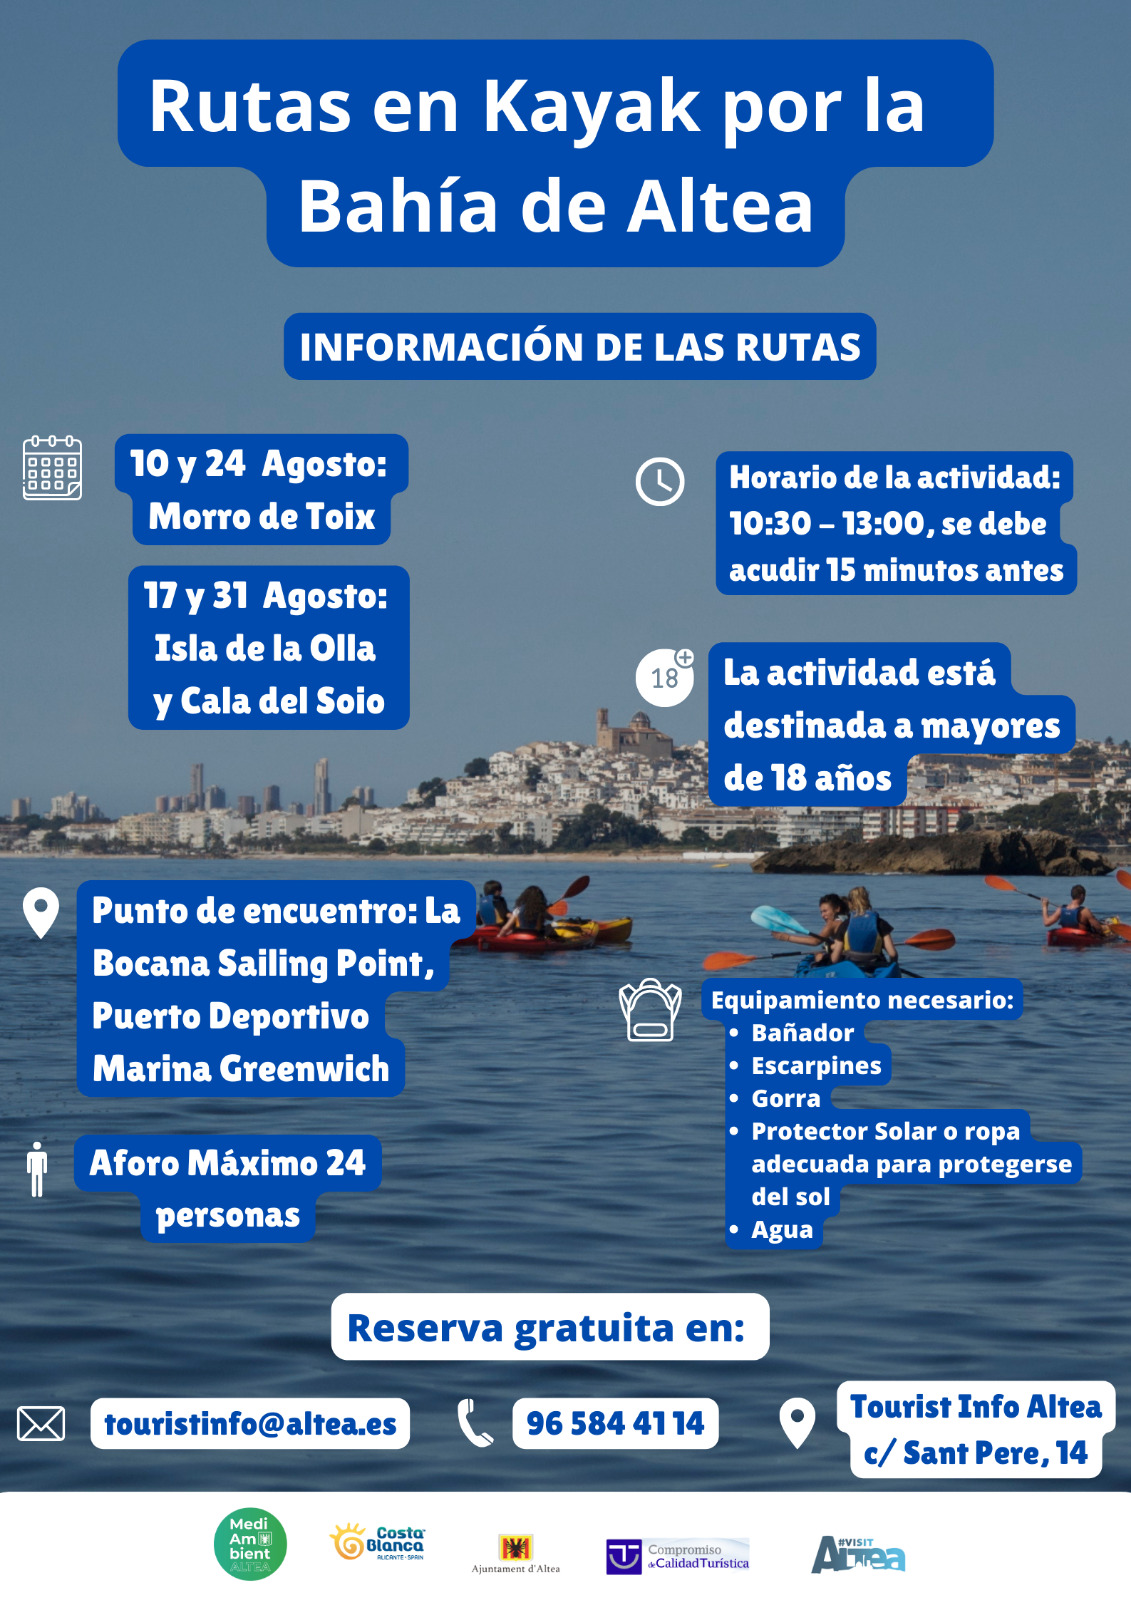 Turismo y Medio Ambiente organizan unas visitas guiadas con kayak enfocadas en la sensibilización del patrimonio natural de la Bahía de Altea